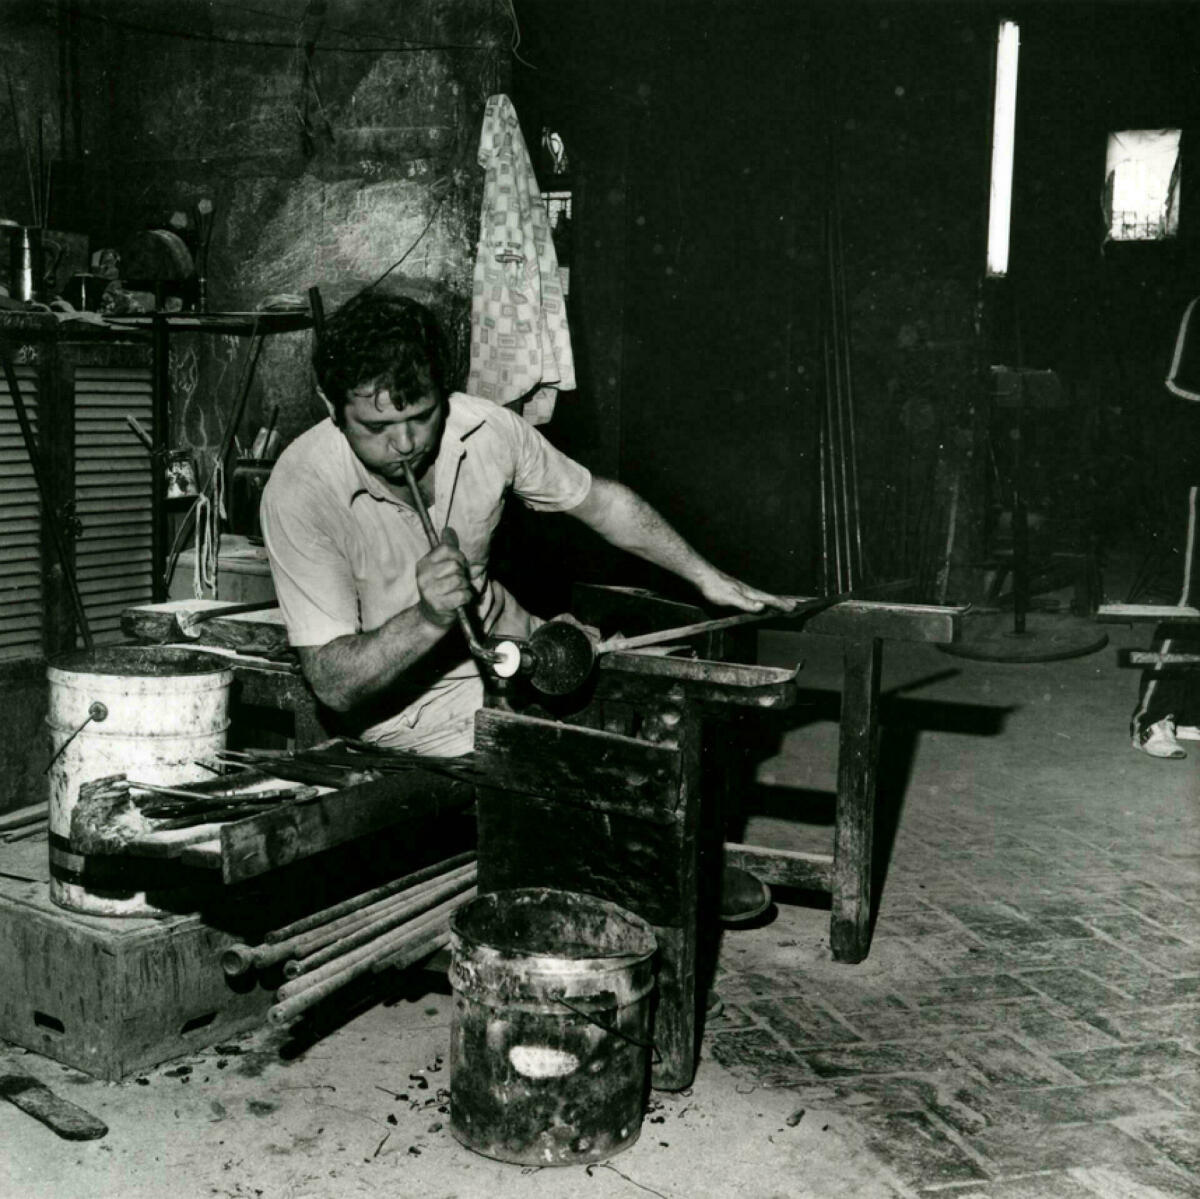 Foto en blanc i negre. Es veu un artesà vidrier assegut en el seu taller bufant vidre per fer una ampolla